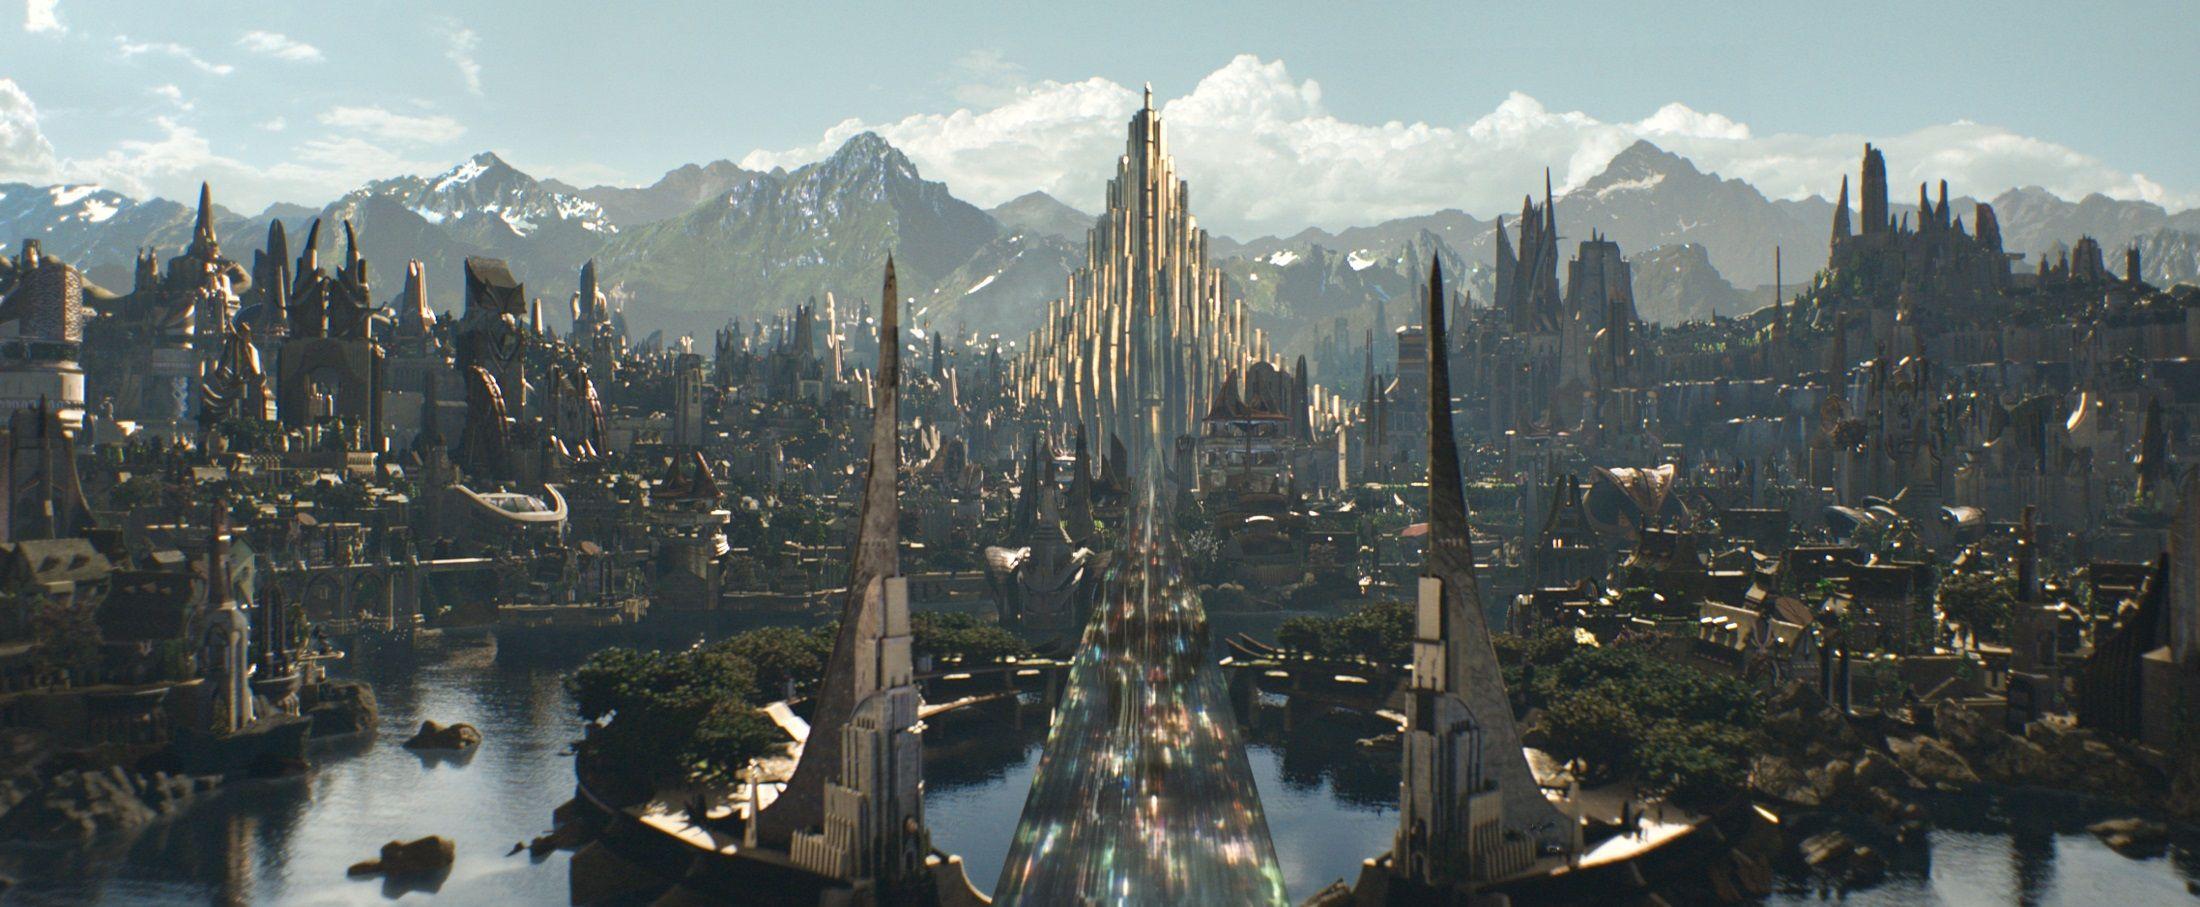 Best Image About Neo Asgard. The Dark World